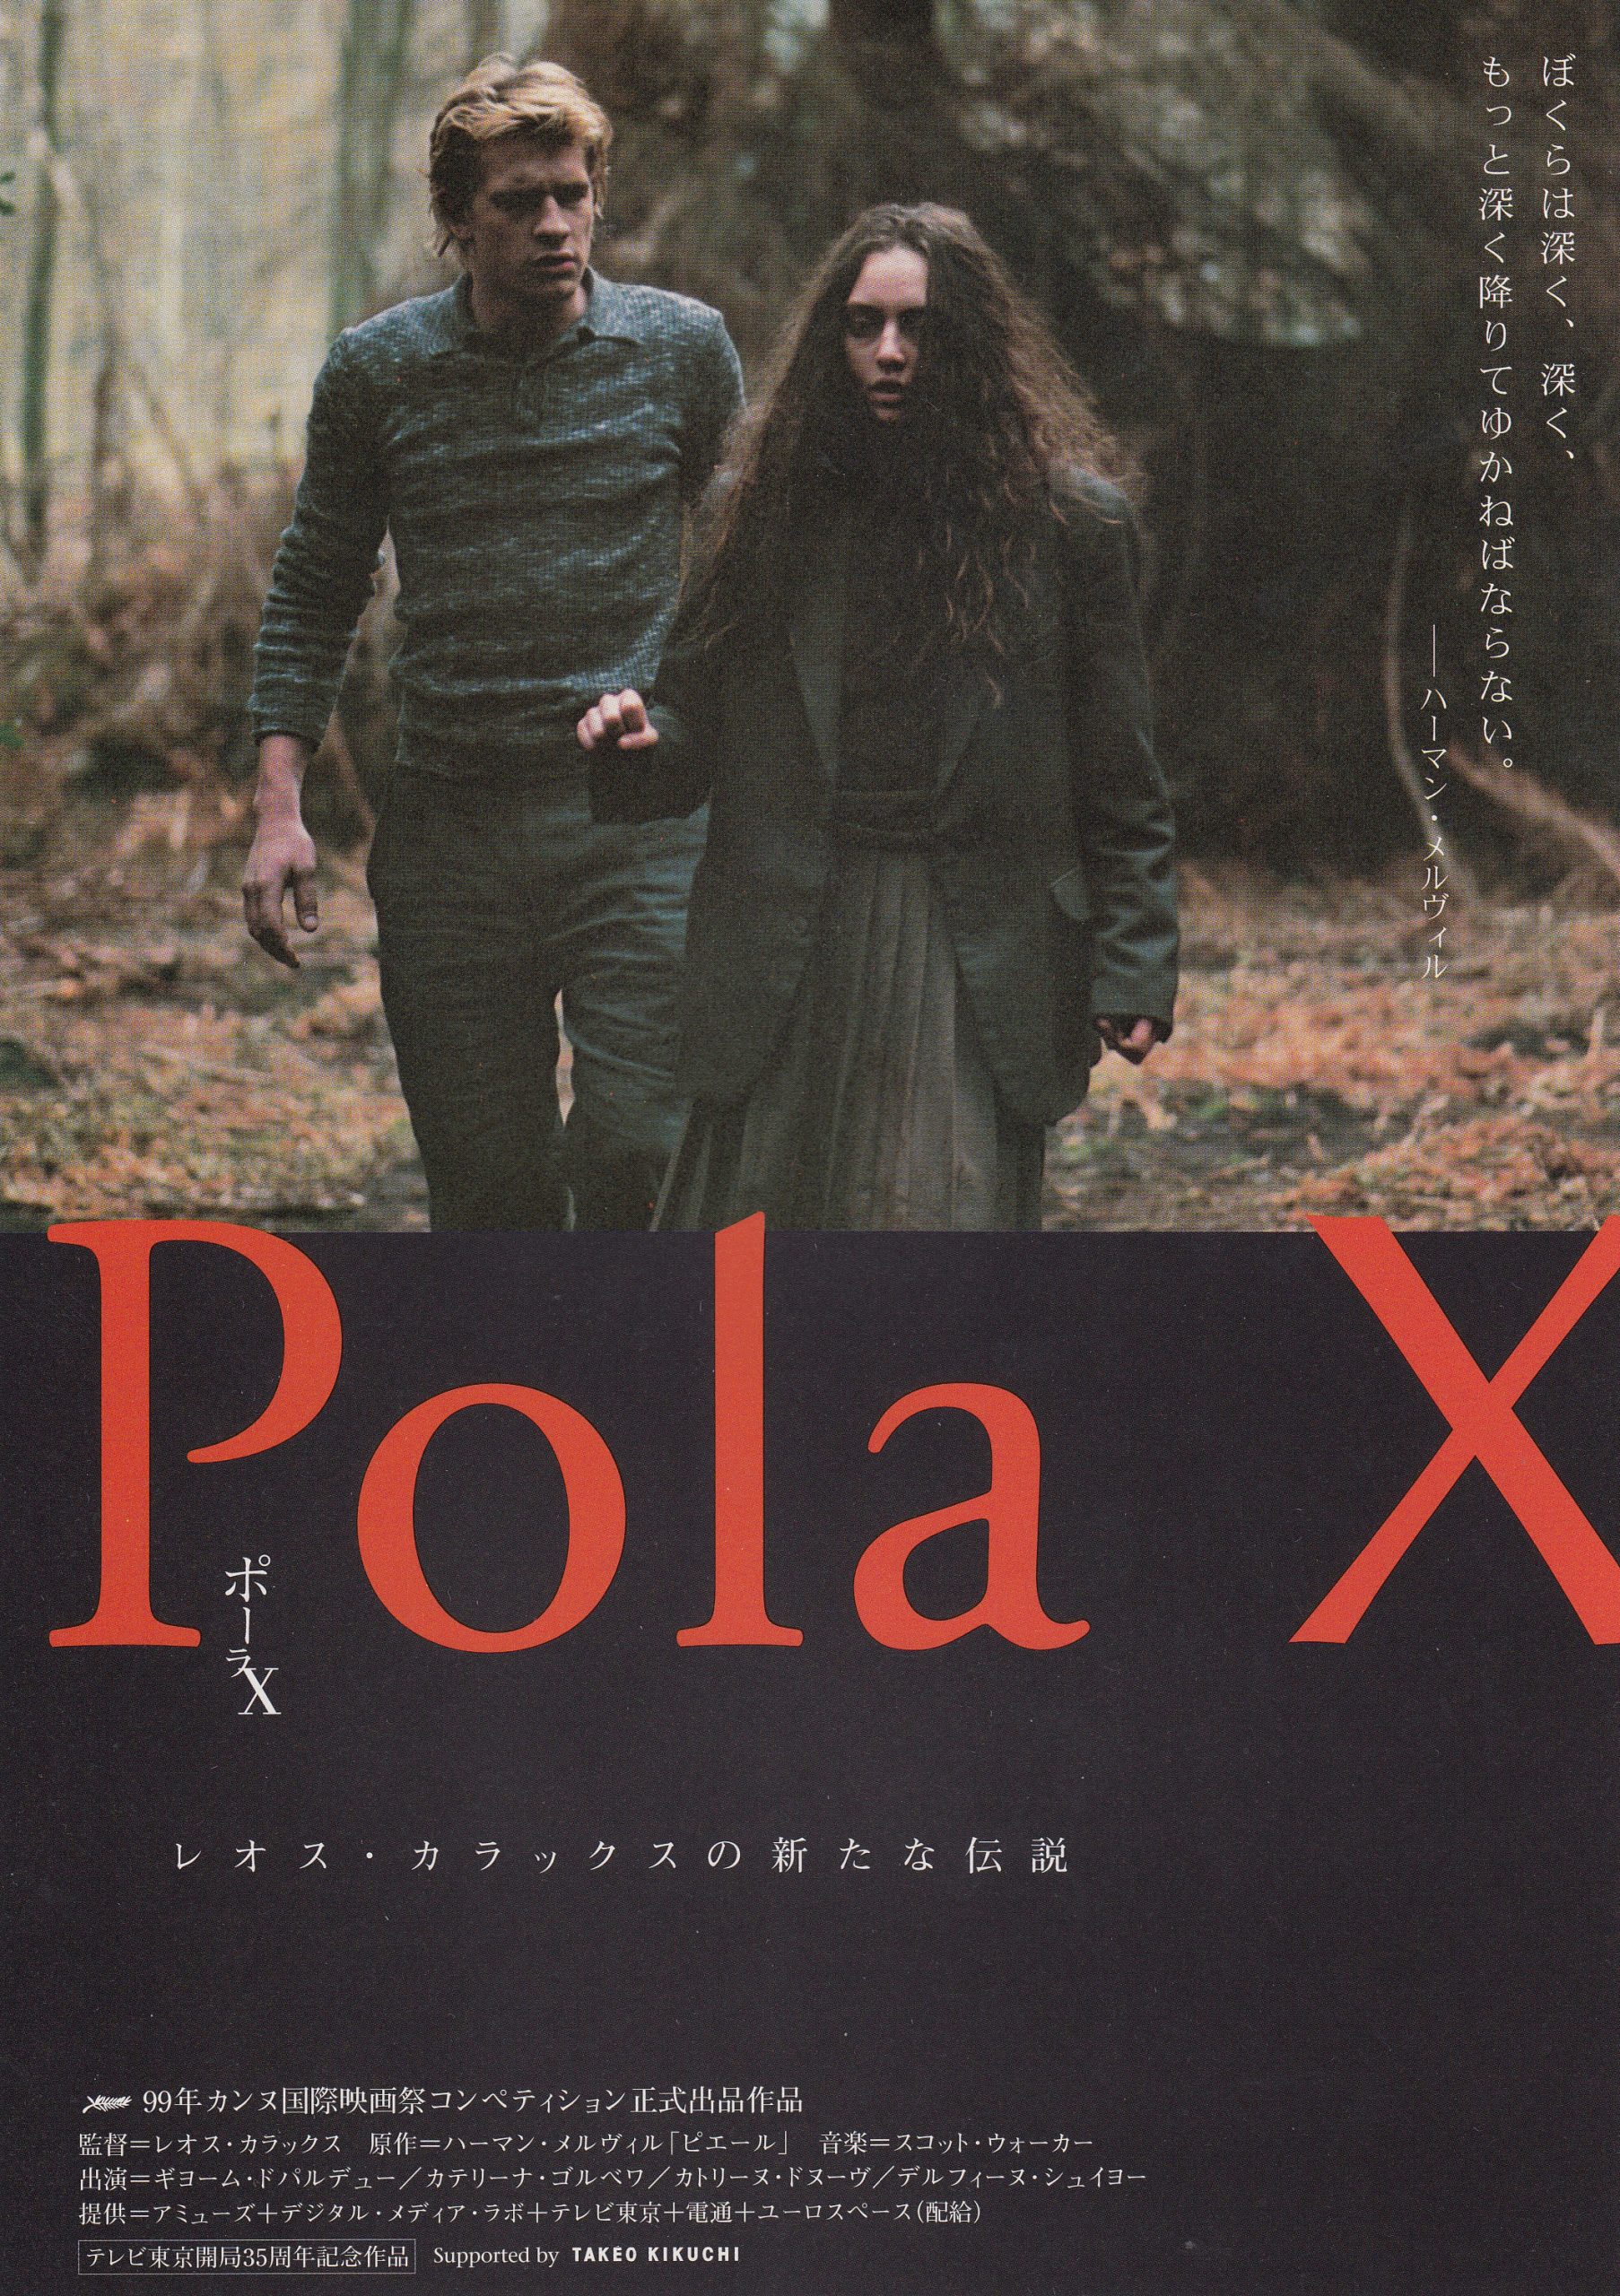 ポーラX('99仏/独/スイス/日本)